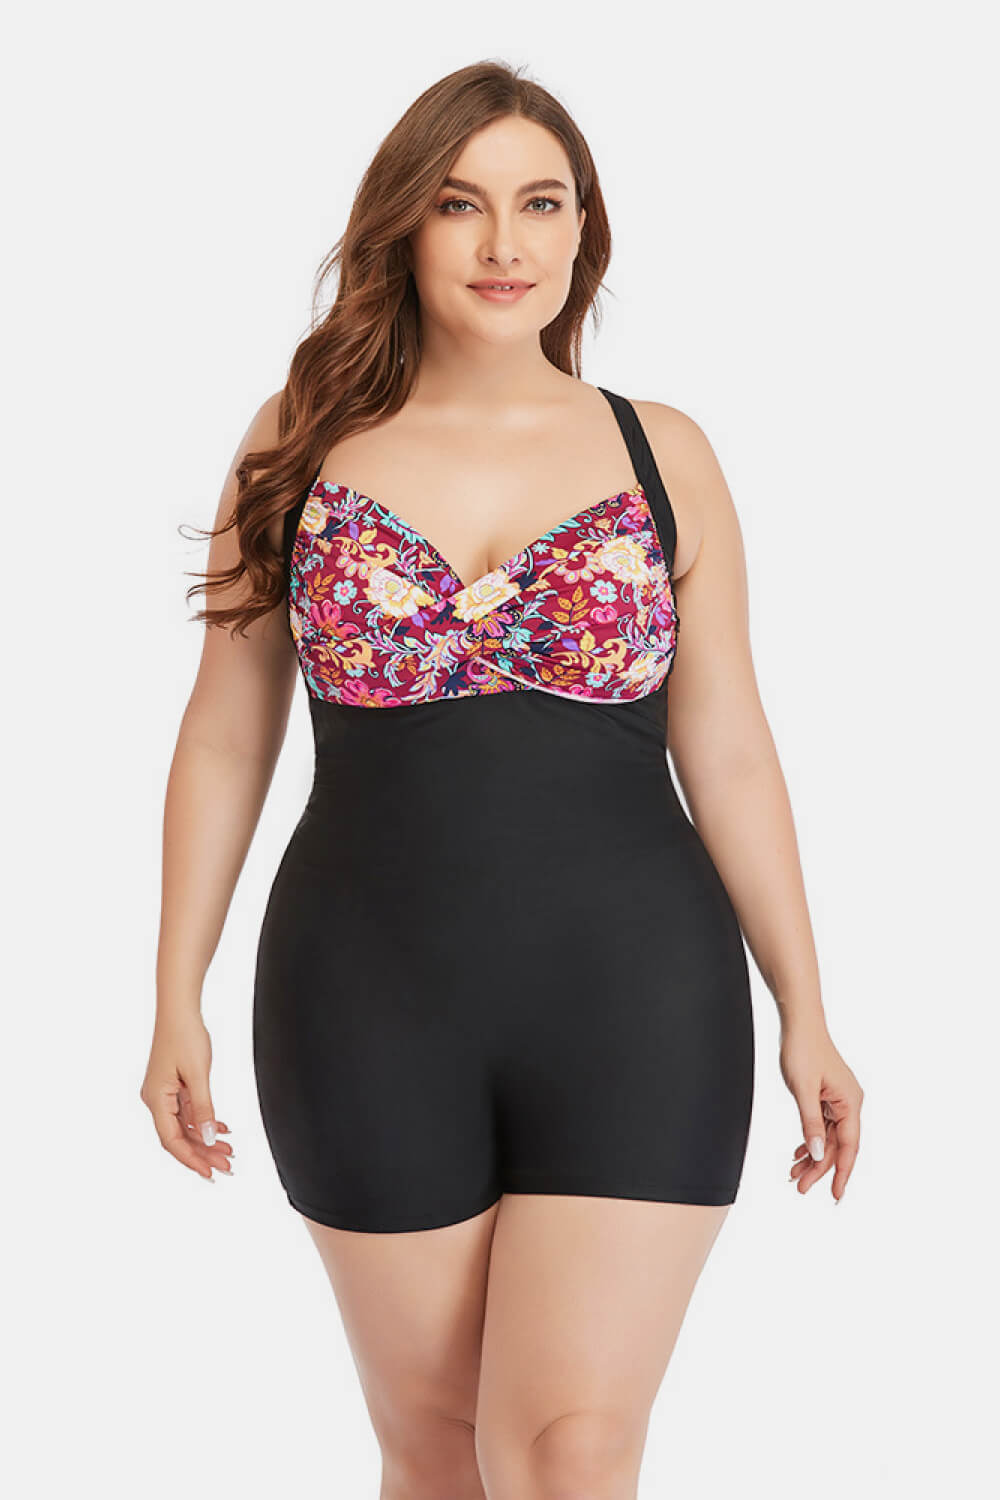 Plus Size Two-Tone One-Piece Swimsuit - Minihomy